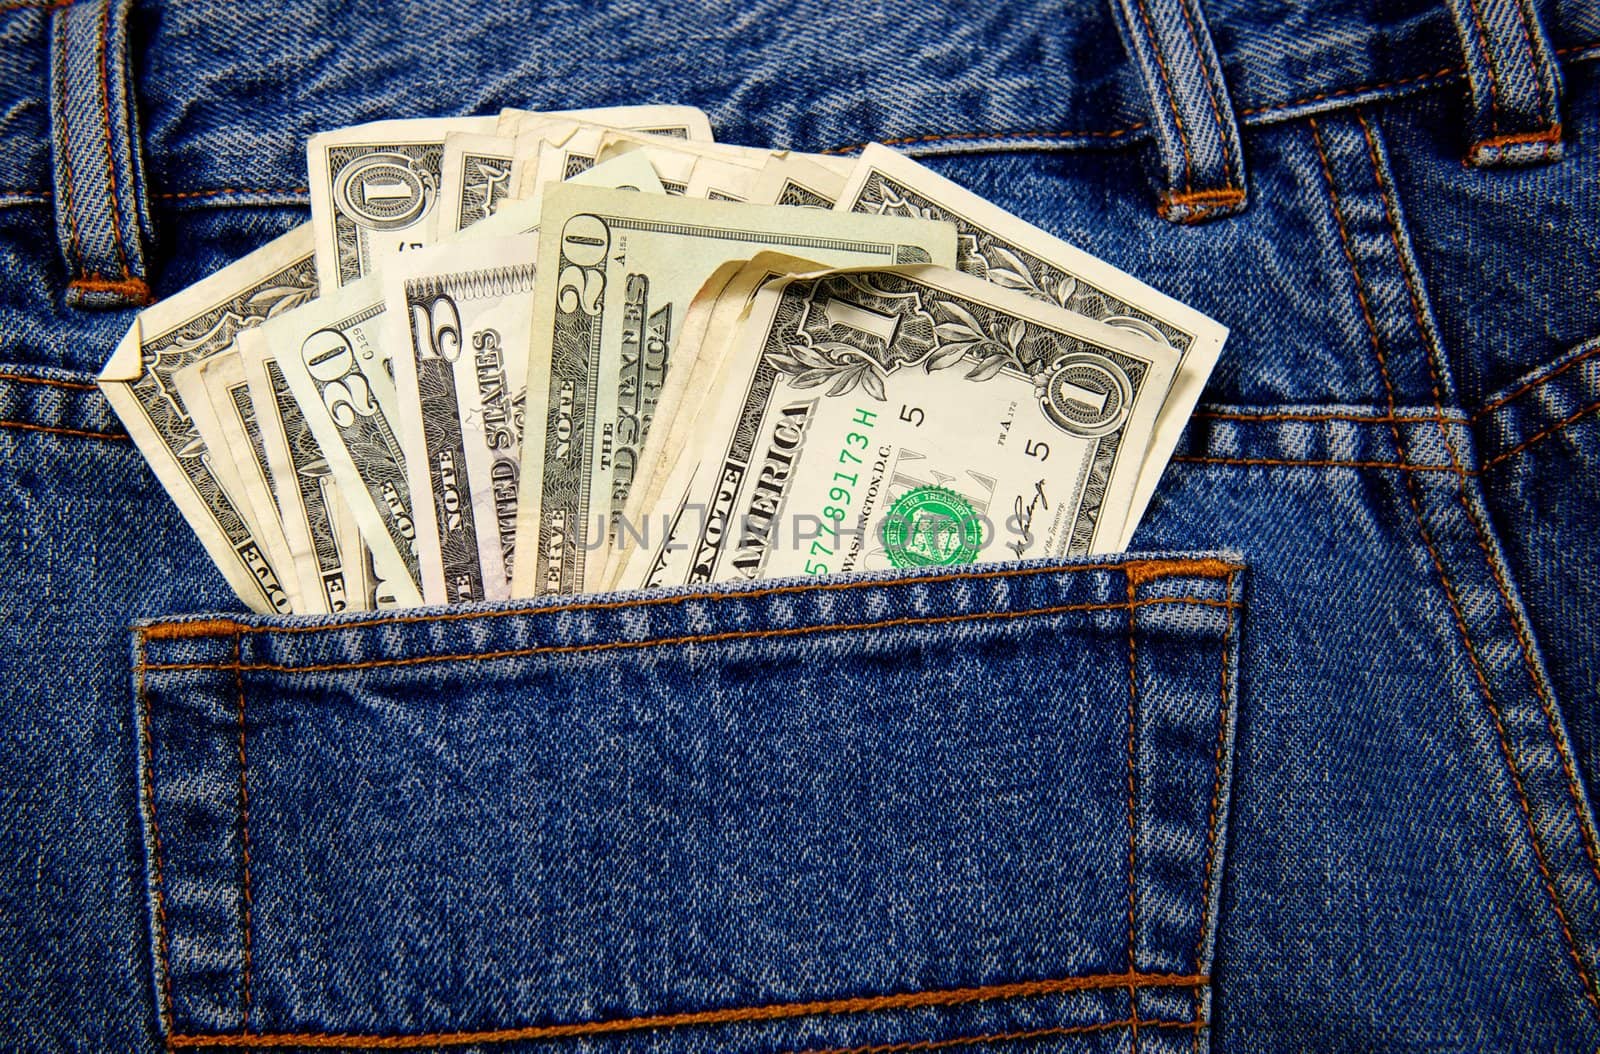 Back Jeans Pocket Full of Cash by pixelsnap